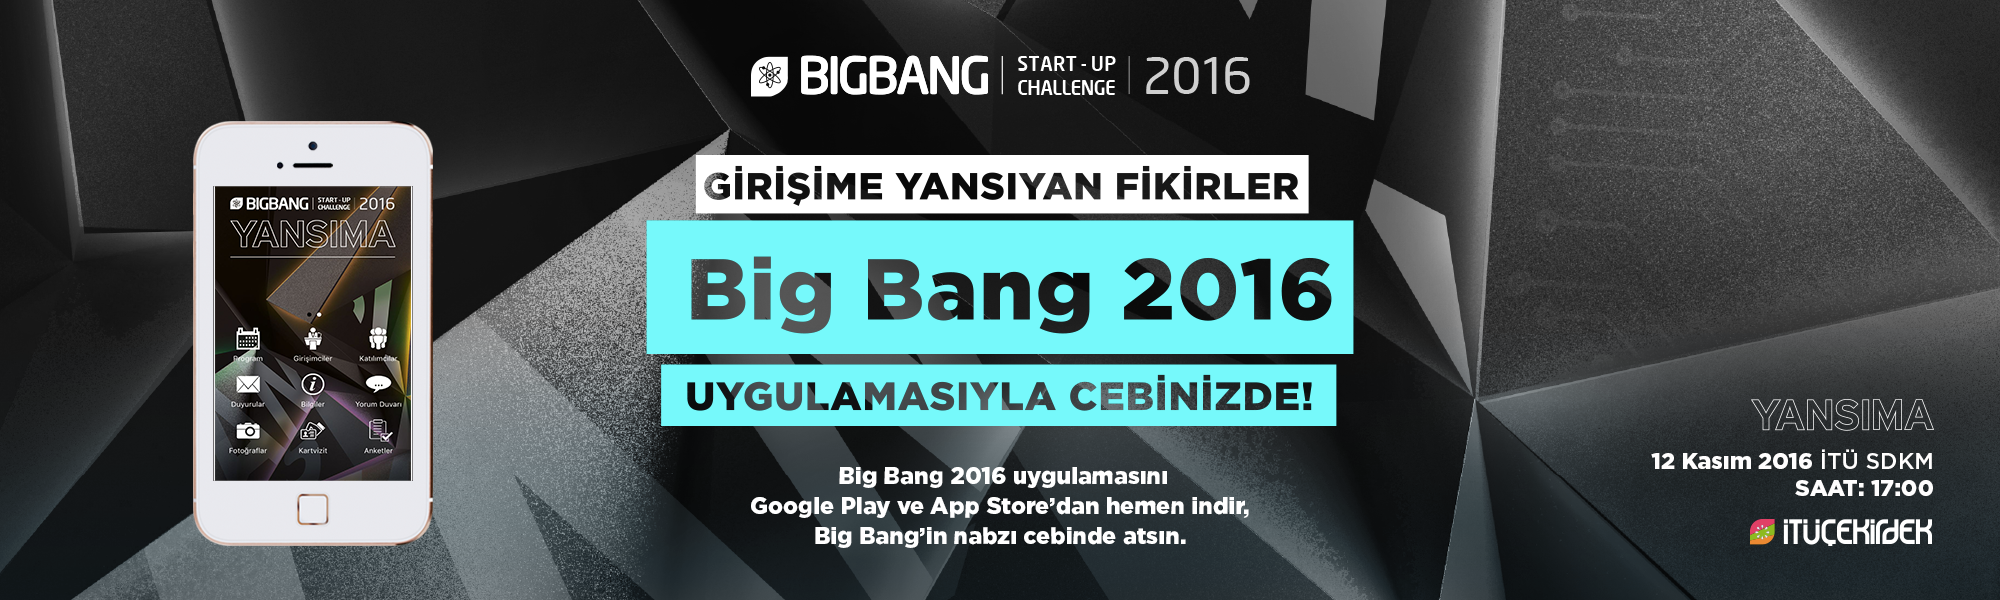 big bang 2016 mobi̇l uygulamasi çikti! 7